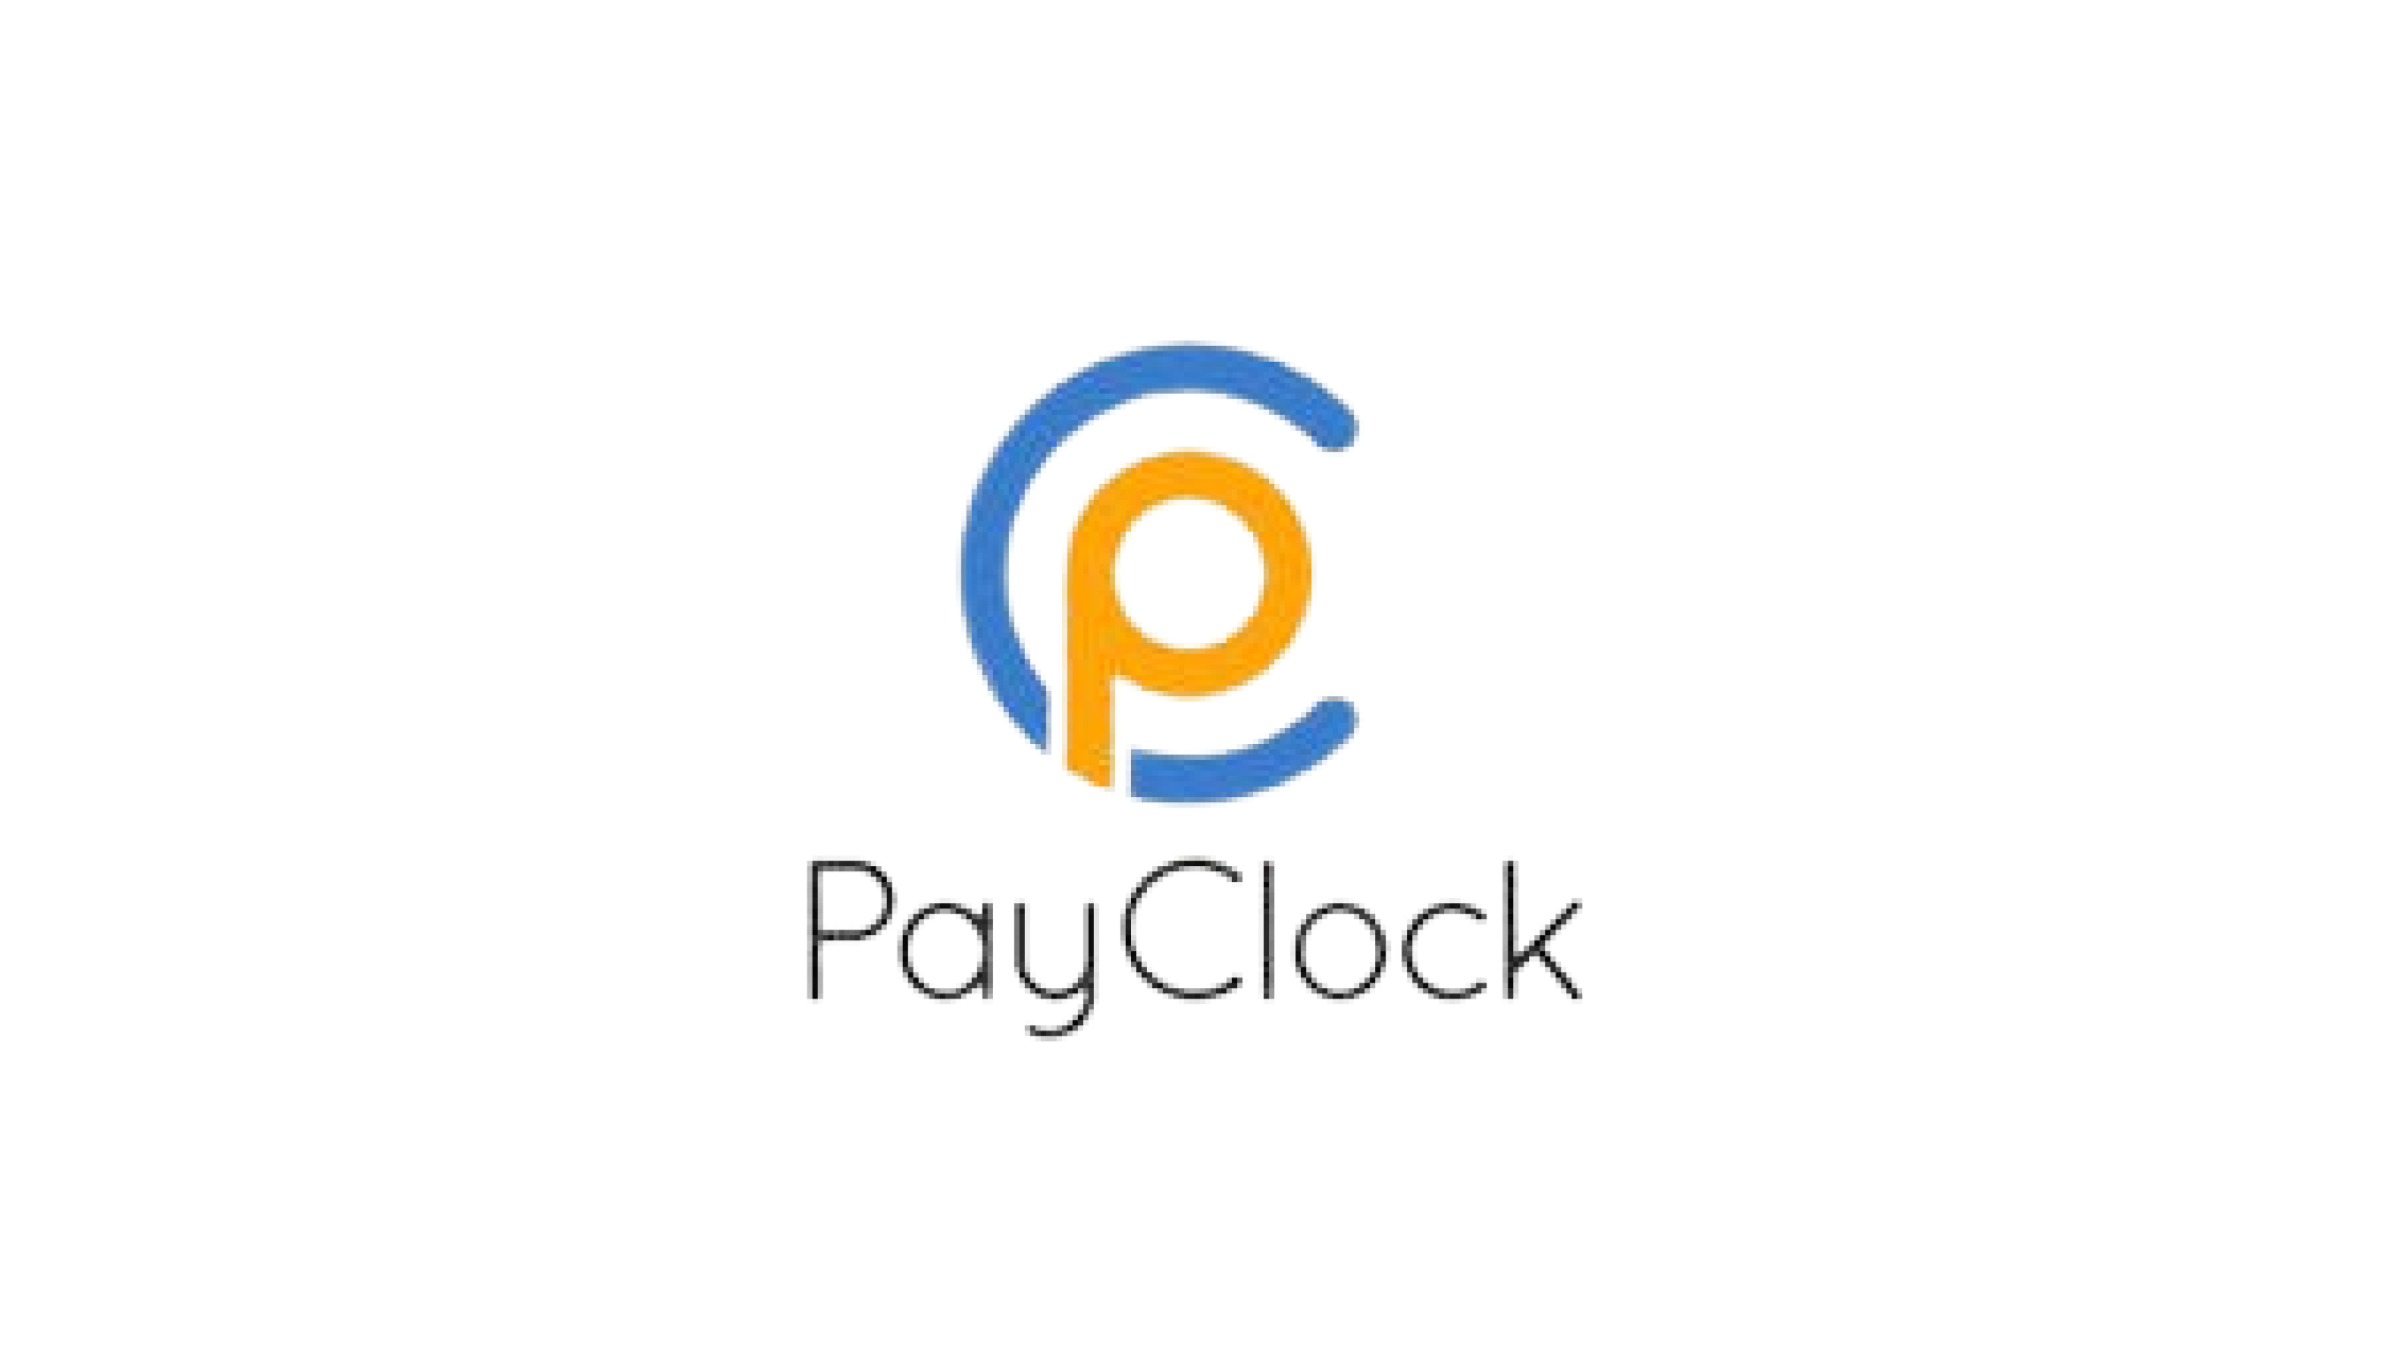 Payclock Online